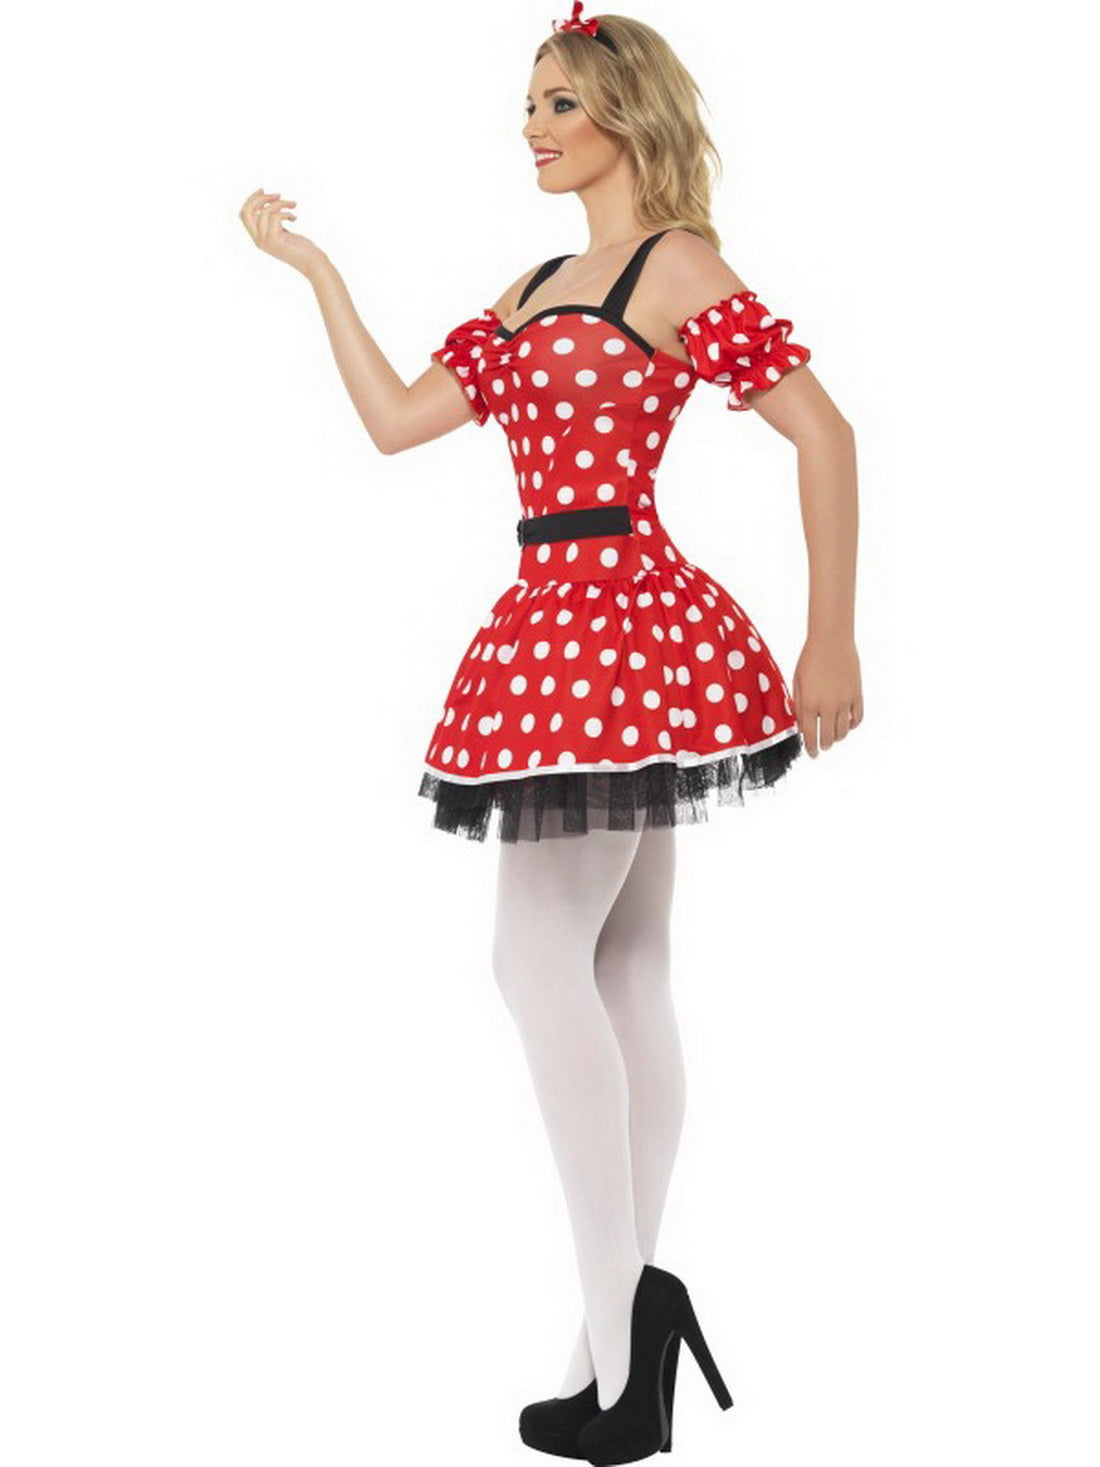 Damen Frauen Fräulein Maus Kostüm mit Kleid, Manschetten und Mäuseohren, perfekt für Karneval, Fasching und Fastnacht, S, Rot